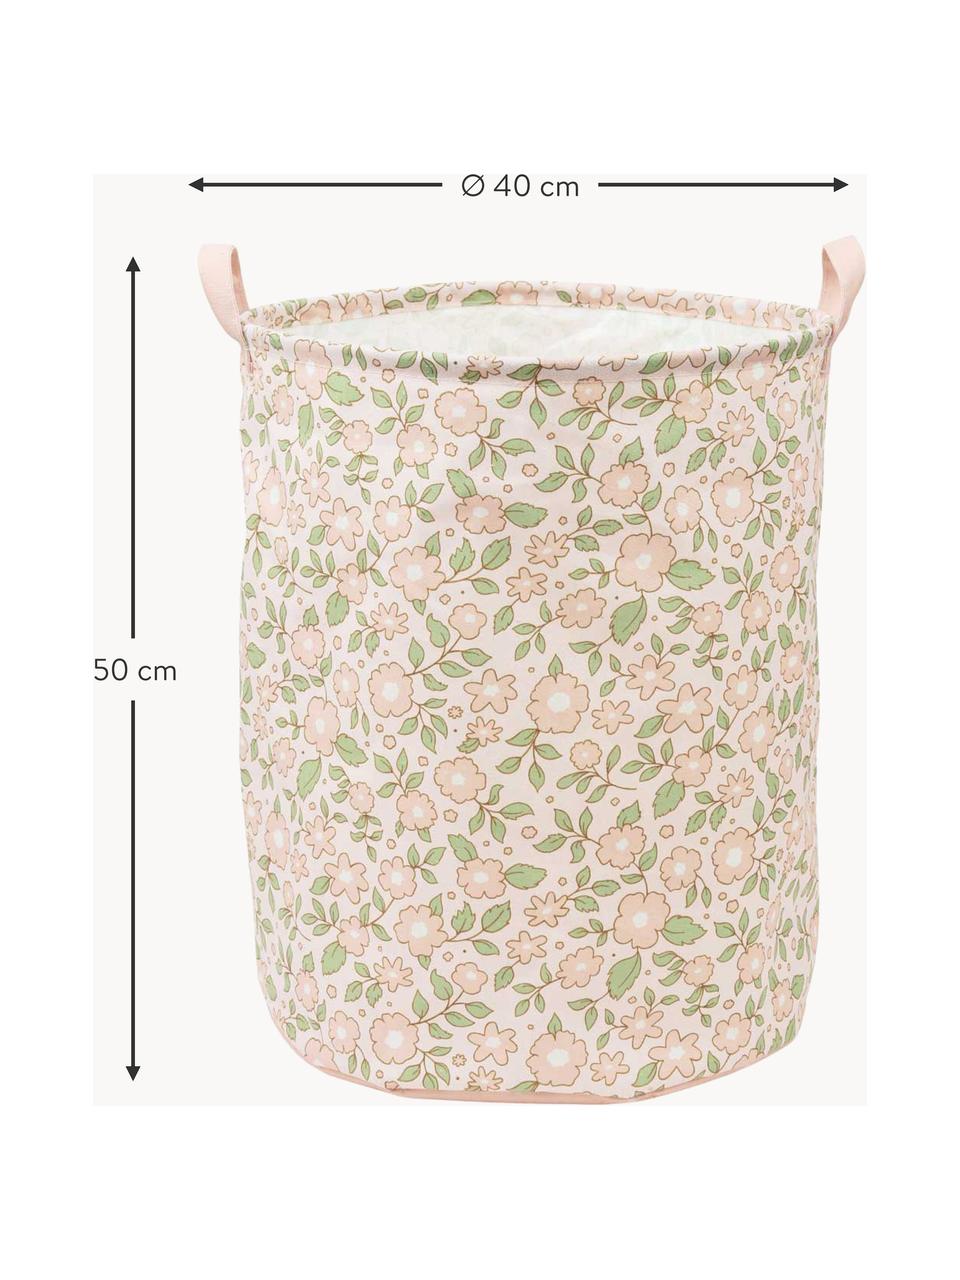 Dětský úložný koš Blossoms, skládací, 70 % bavlna, 30 % polyester, Brosková, šalvějově zelená, Ø 40 cm, V 50 cm